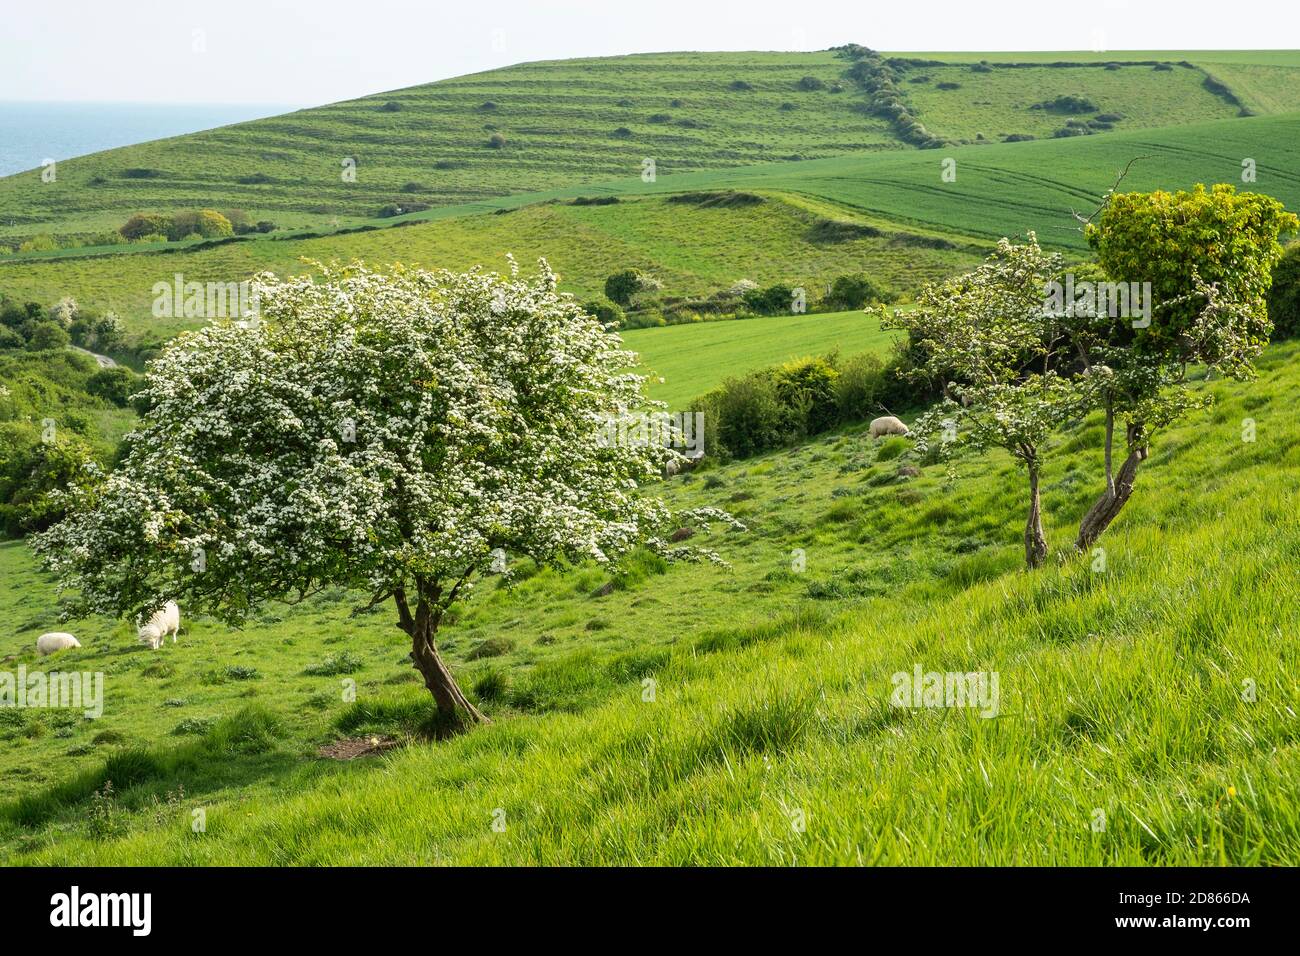 Paysage rural de collines ondoyantes et de champs verts avec fleurs de Hawthorn et moutons paître près de la mer entre Winspit et Worth Matravers, Dorset Banque D'Images